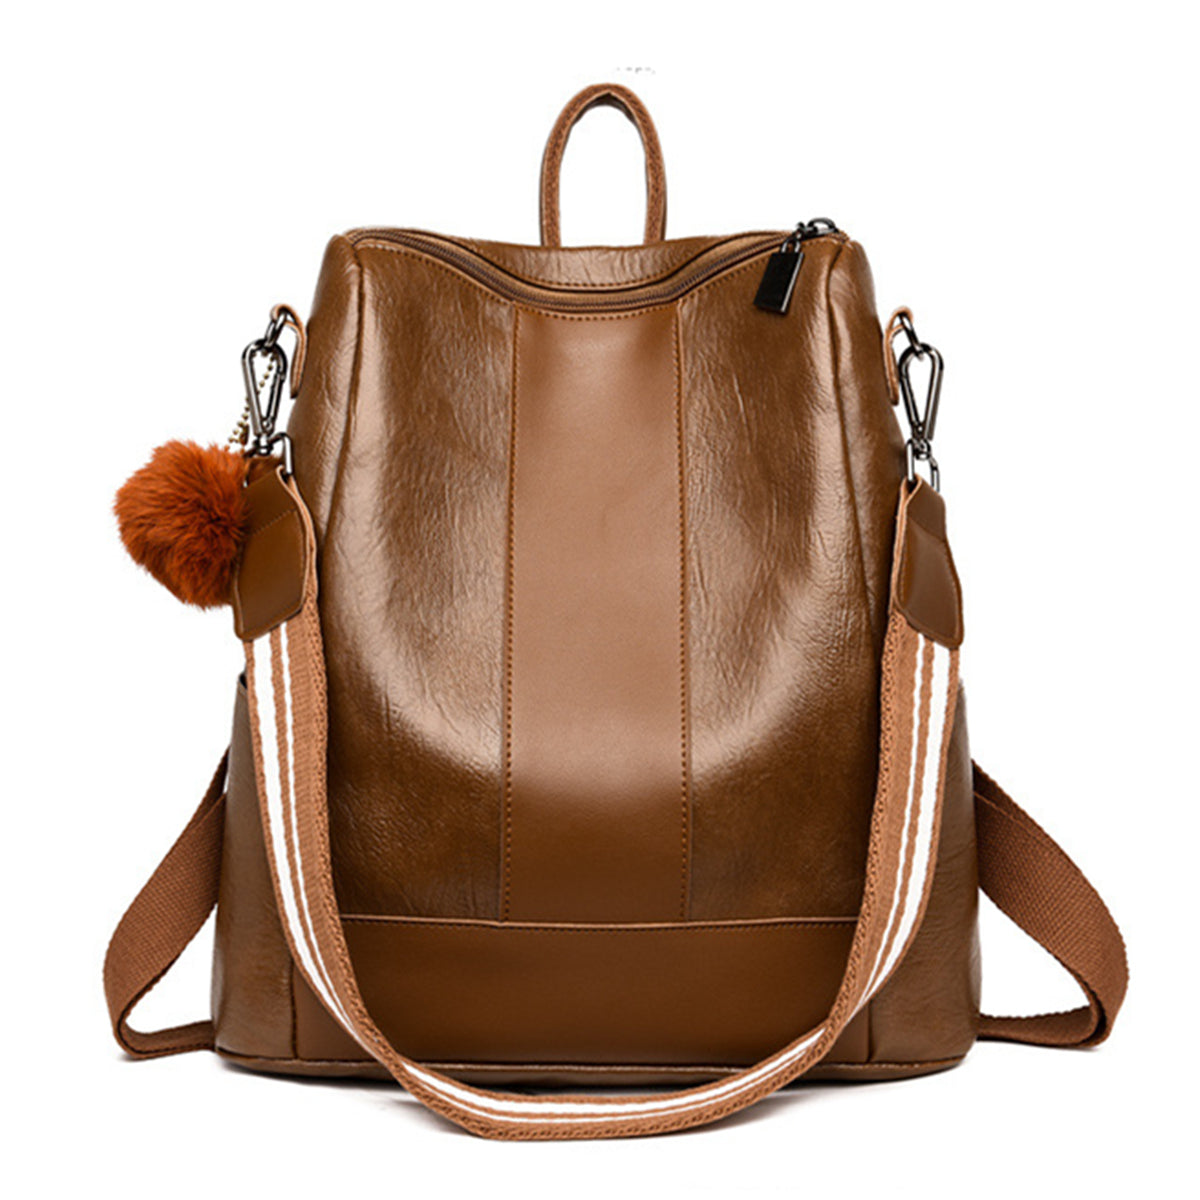 Women Lady School Leather Girls Backpack Outdoor Travel Portable Handbag Shoulder Bag